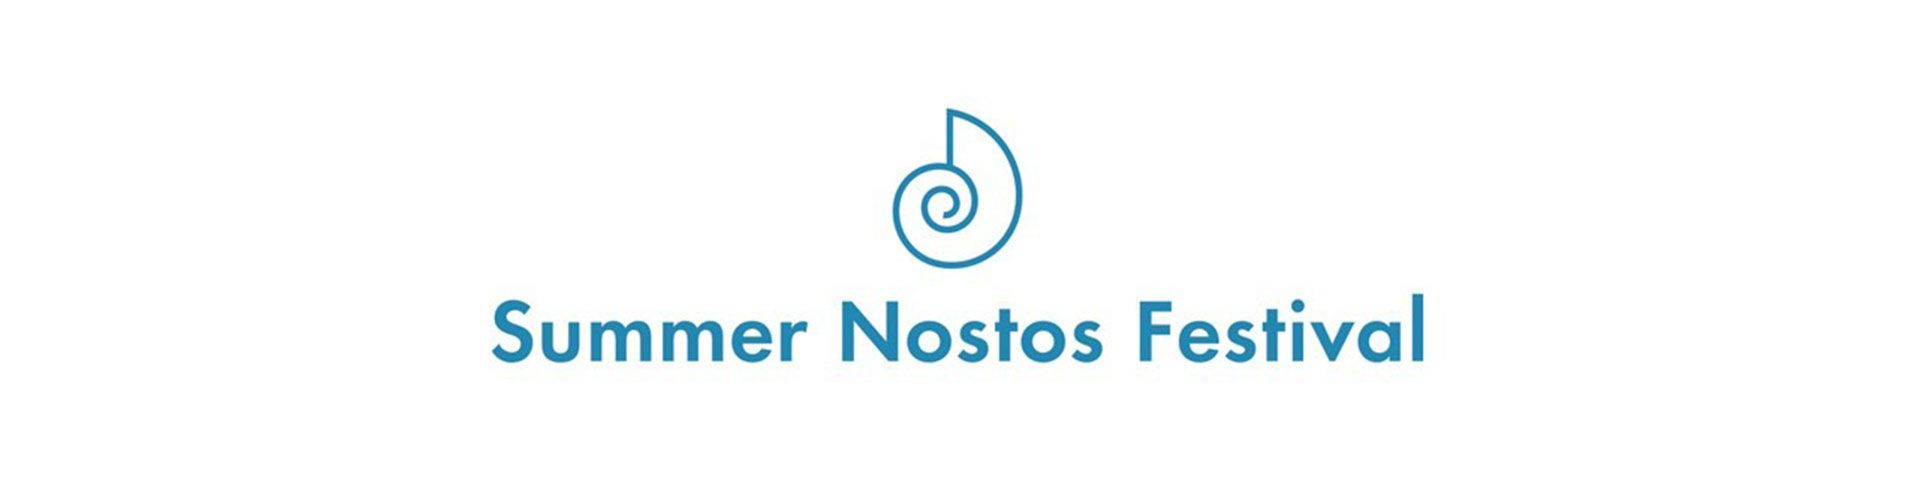 Summer Nostos Festival 2017 - Εικόνα